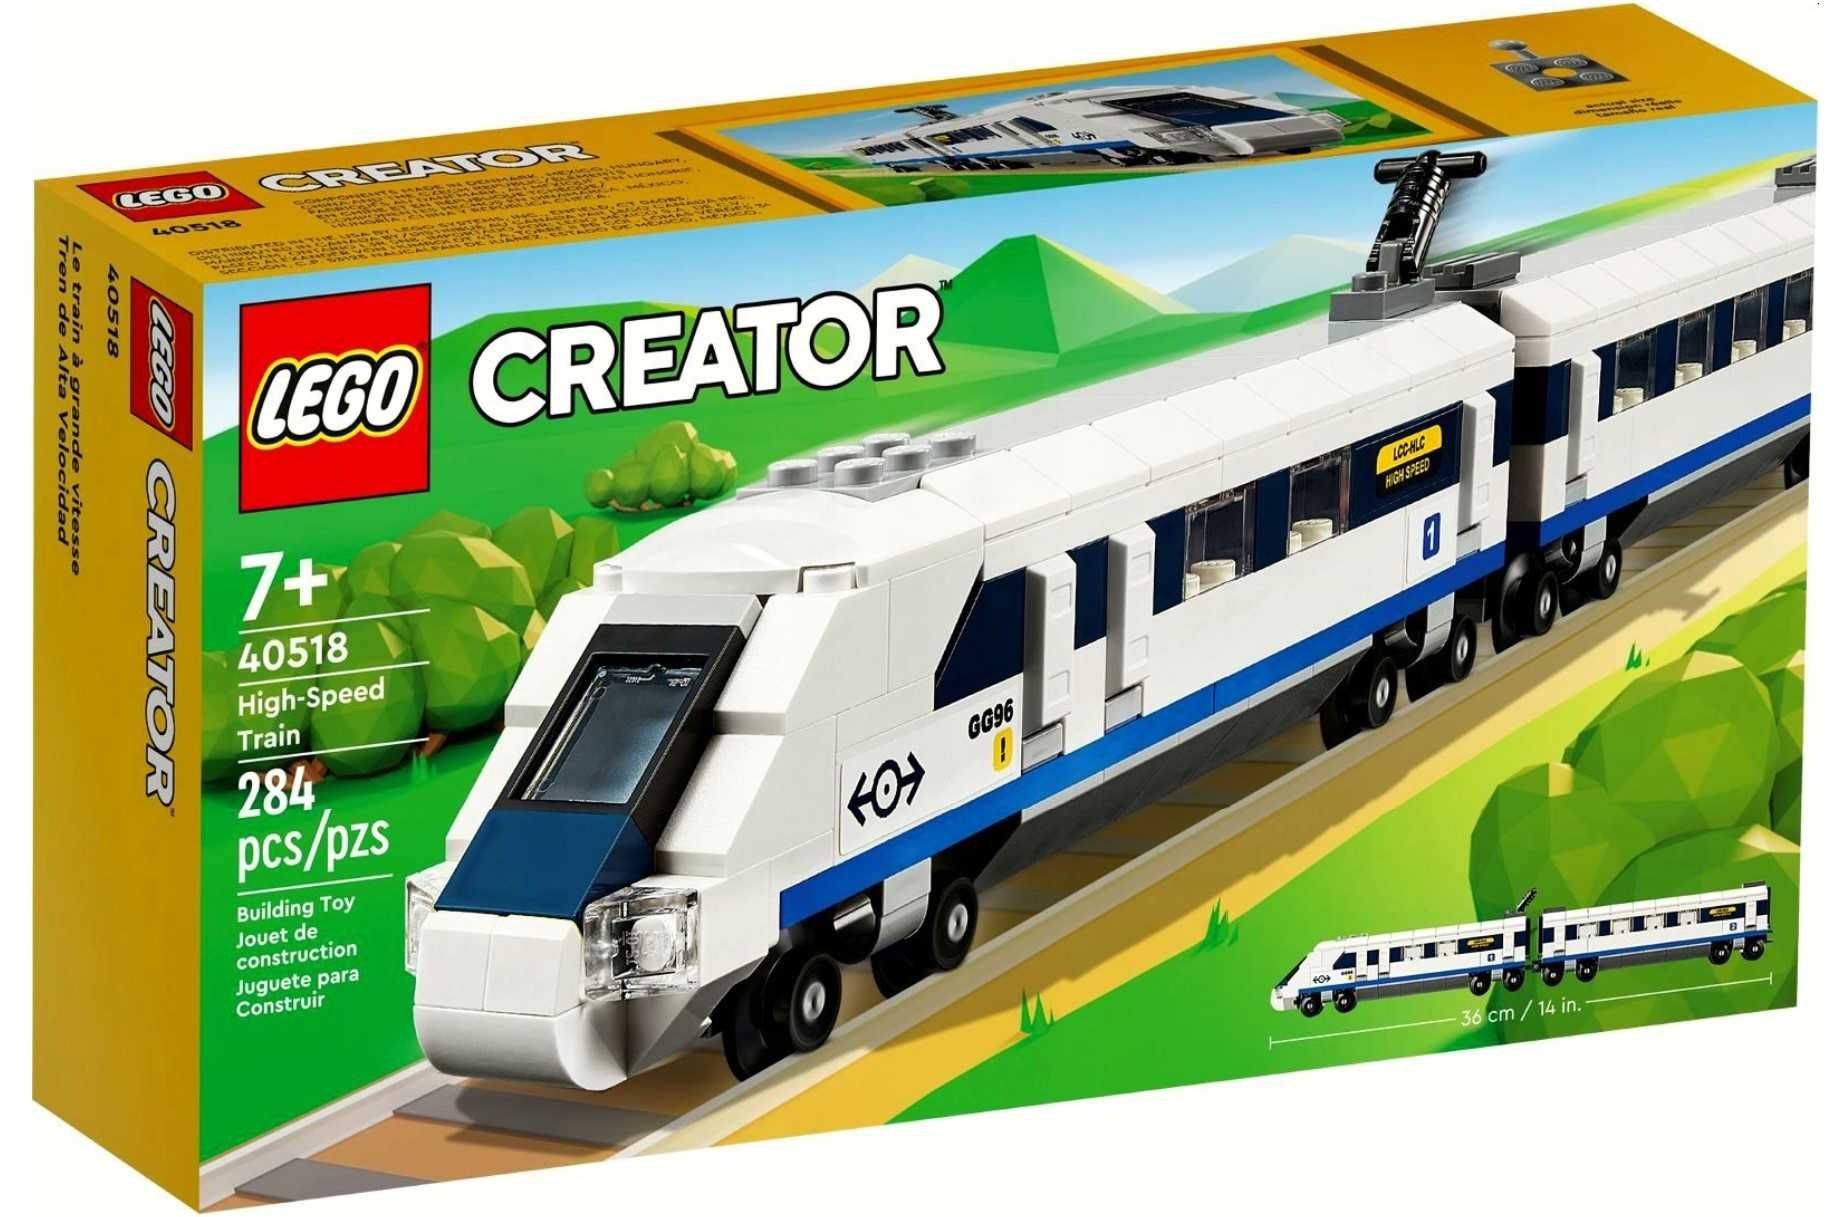 NOWE klocki LEGO Creator 40518 Pociąg szybkobieżny